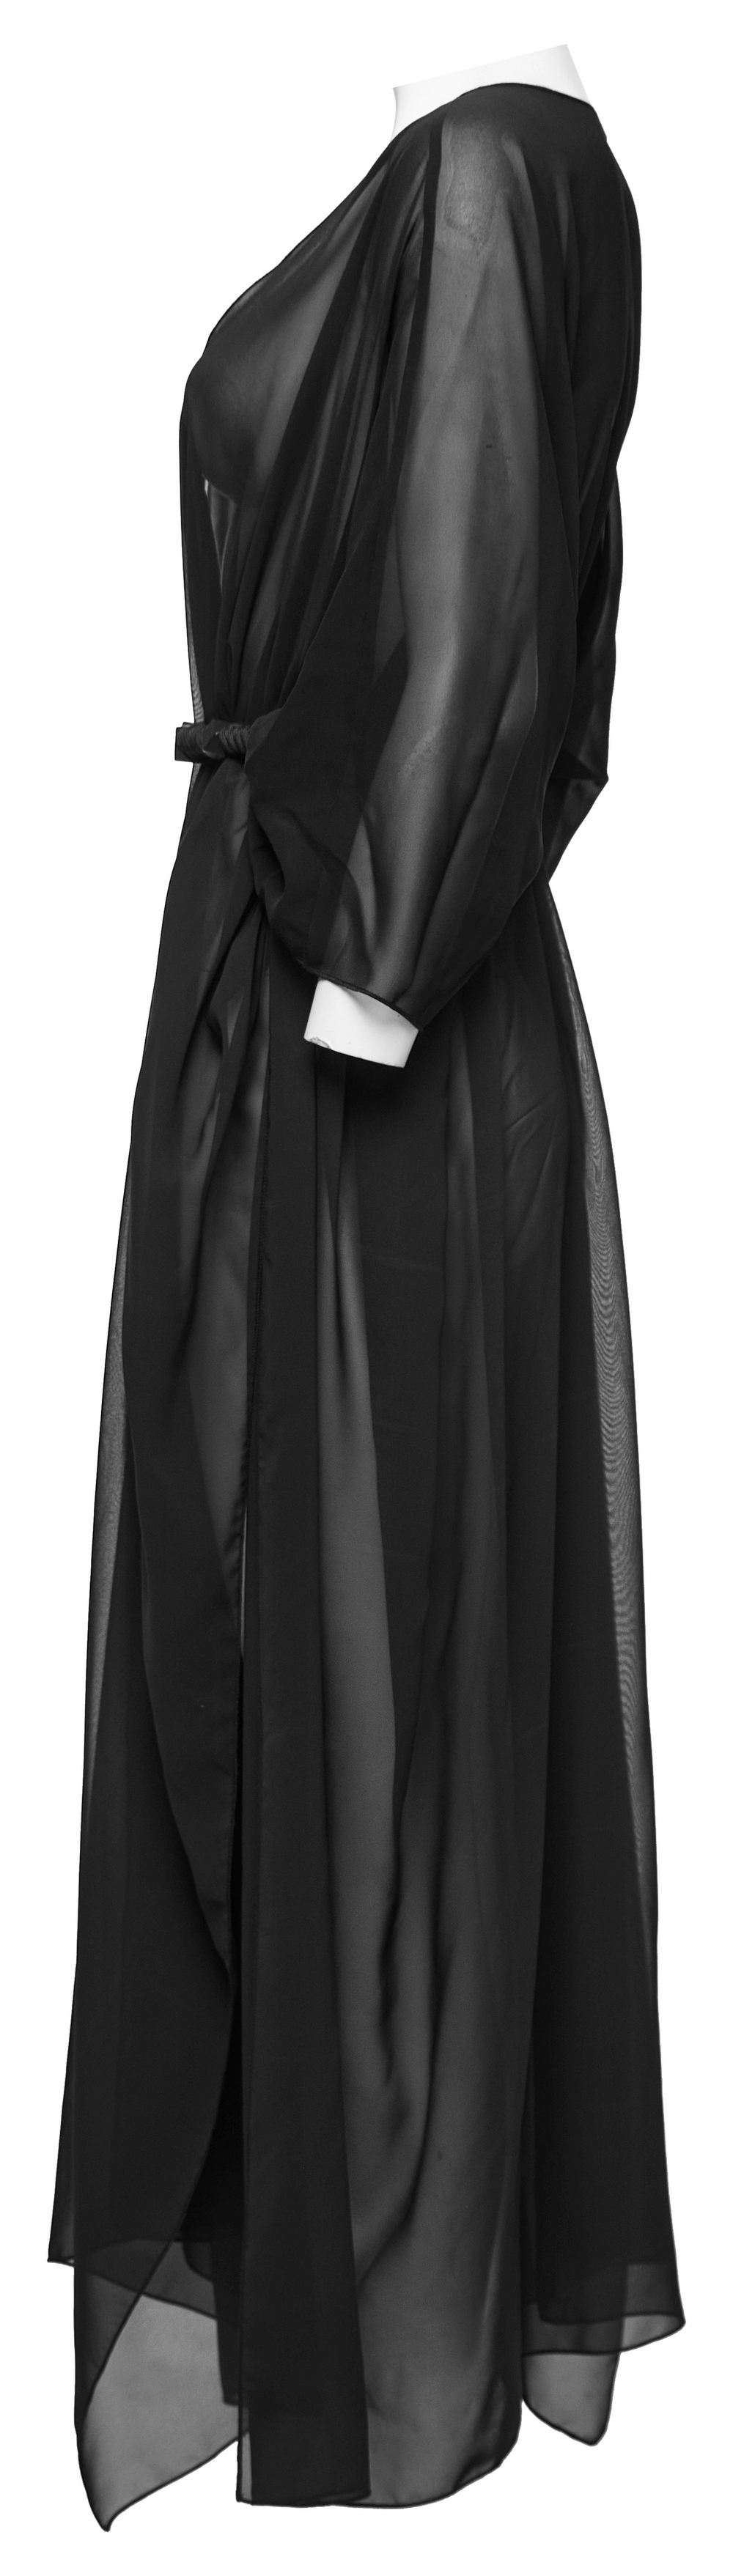 Sexy Goth Elegant Chiffon Cape with Braided Belt